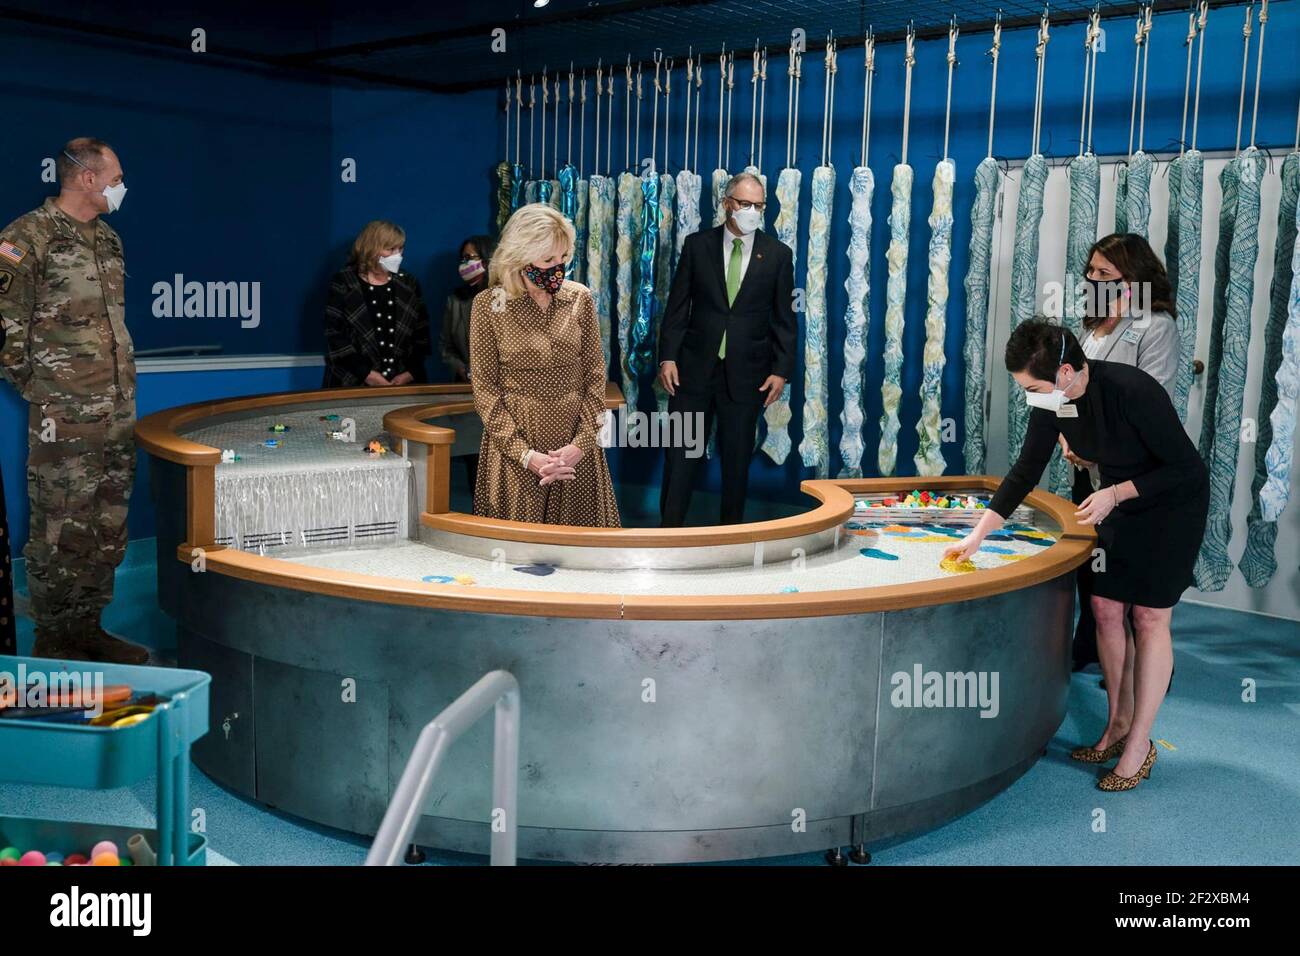 Tanya Durand, Direttore Esecutivo di Greentrike, destra, mostra la First Lady Dr. Jill Biden e il Governatore dello Stato di Washington Jay Inslee, centro, intorno al Museo dei Bambini presso la base congiunta Lewis-McChord 9 marzo 2021 vicino a Tacoma, Washington. Foto Stock